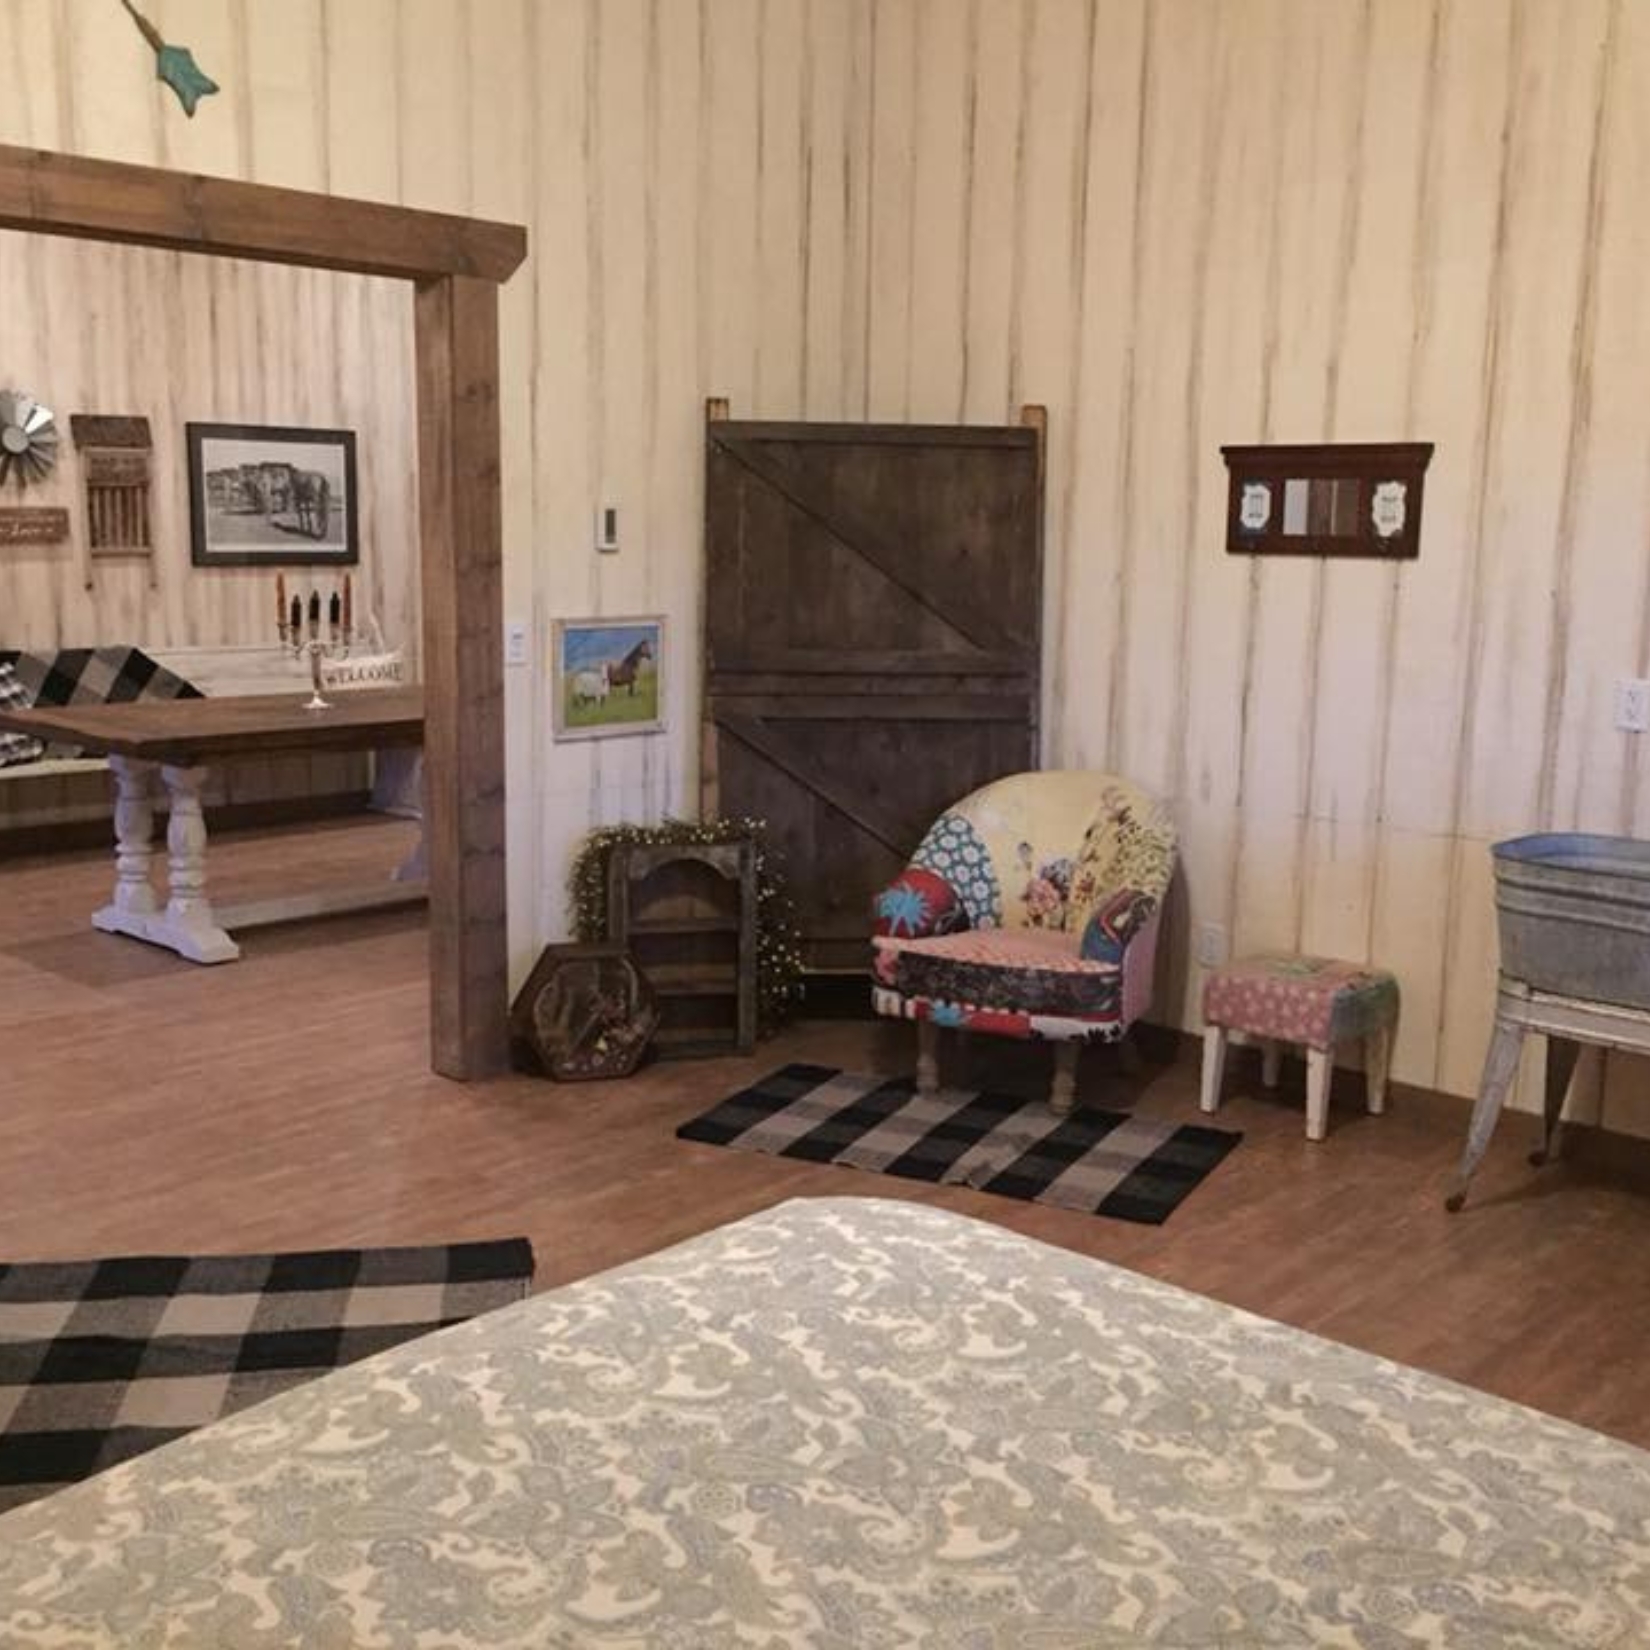 decor in corner of cabin bedroom